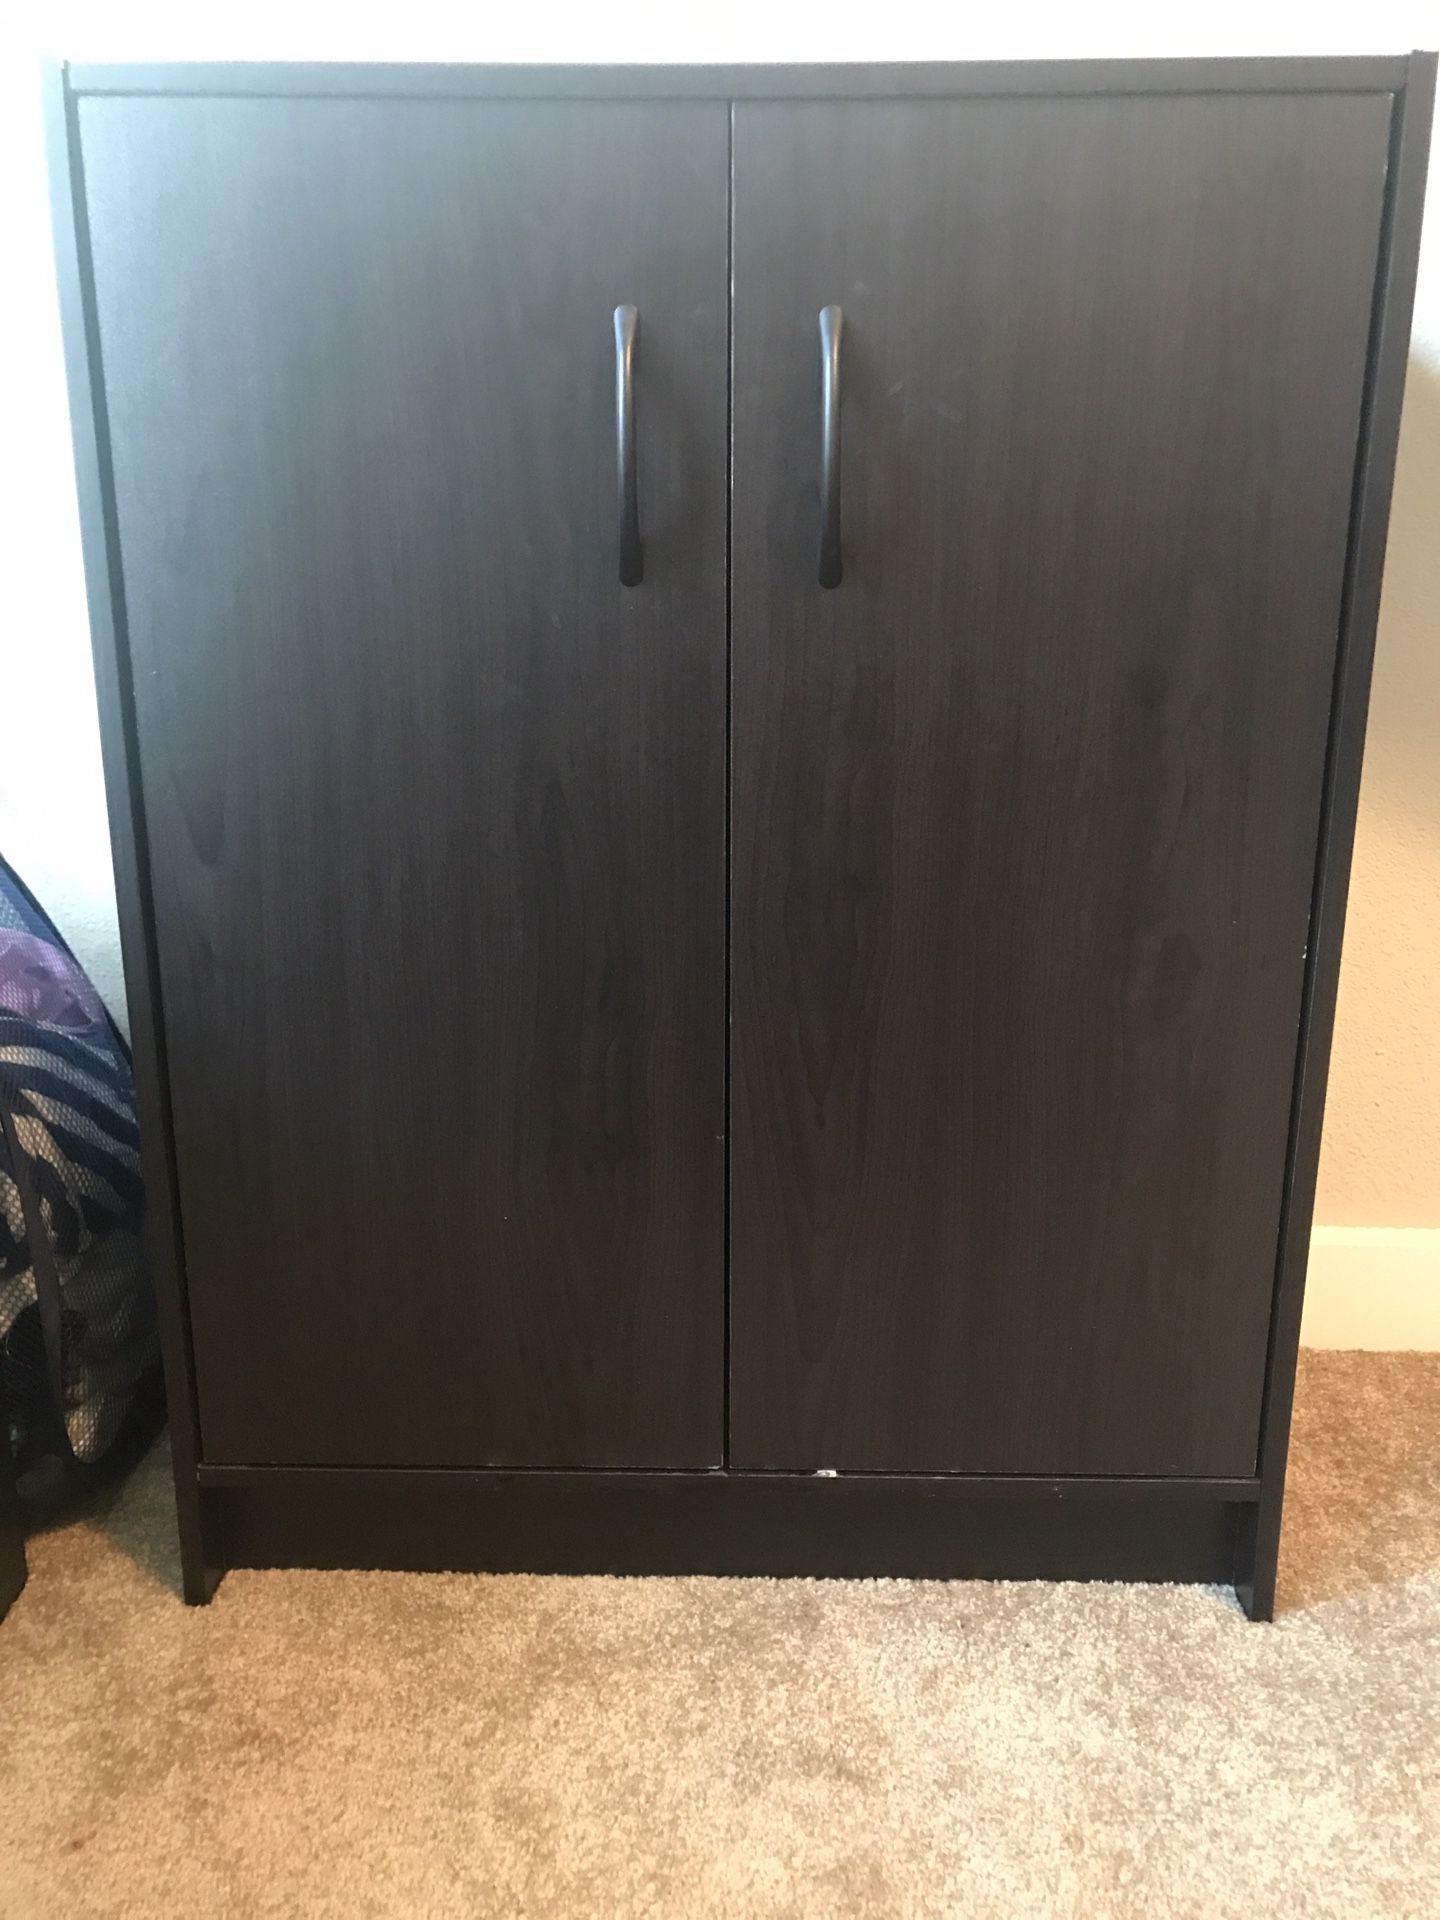 3 shelves magnetic door cabinet